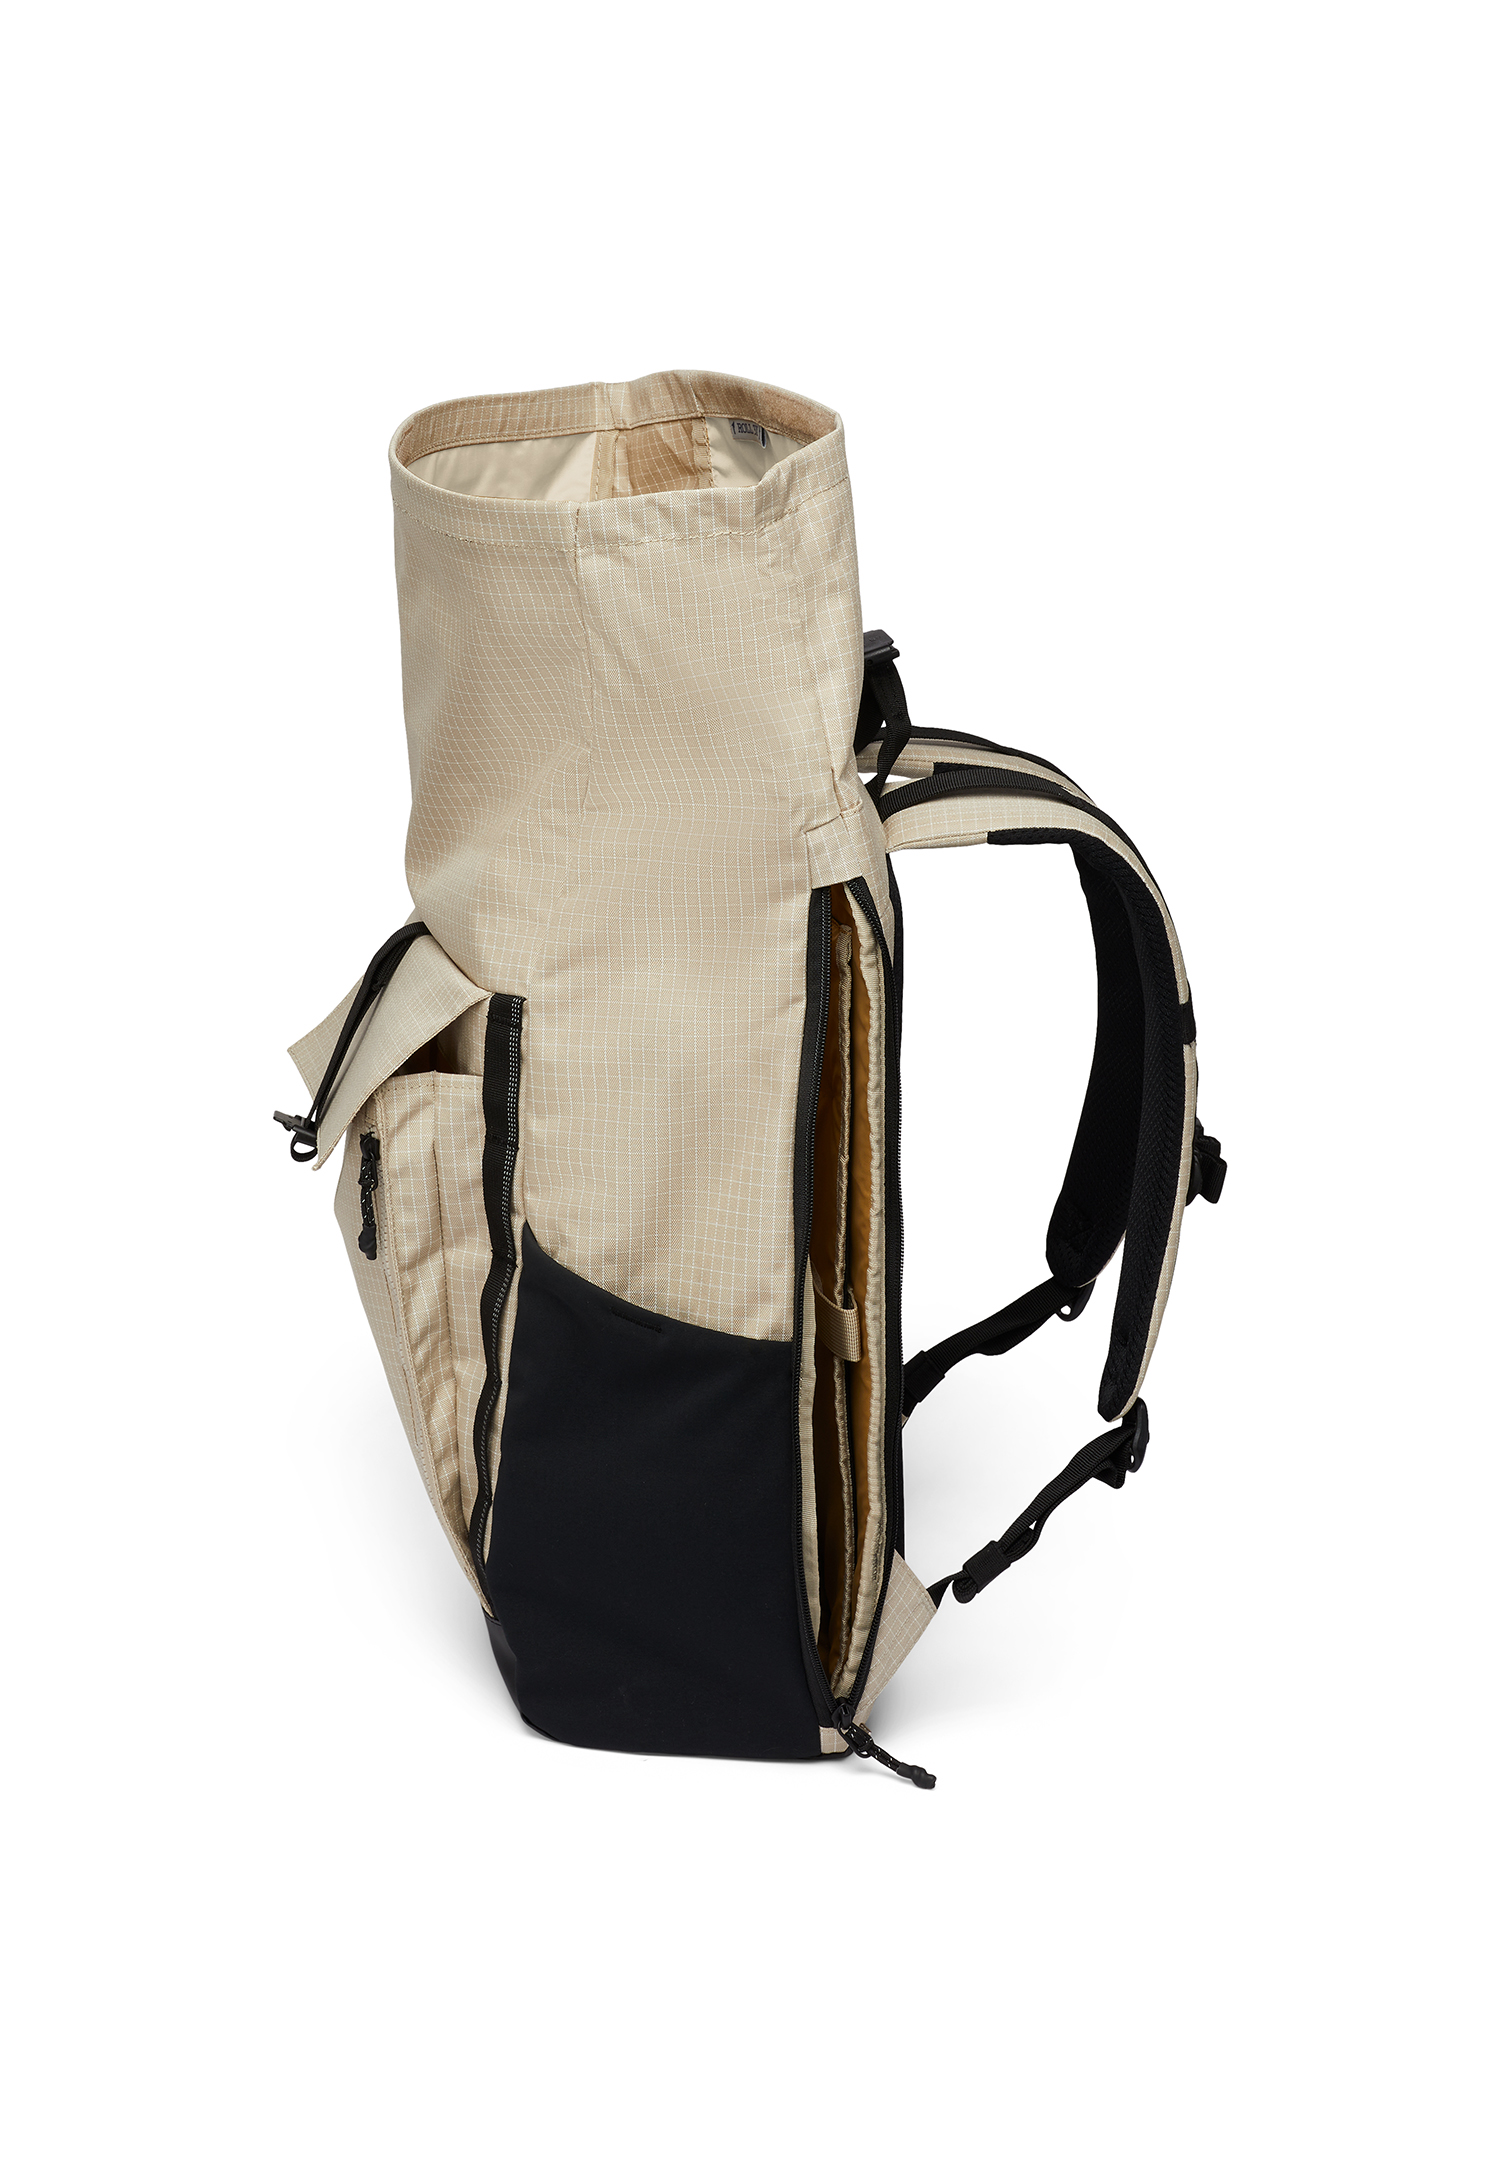 Columbia Convey II 27L Rolltop Backpack Unisex Rucksack 1991161 010 beige